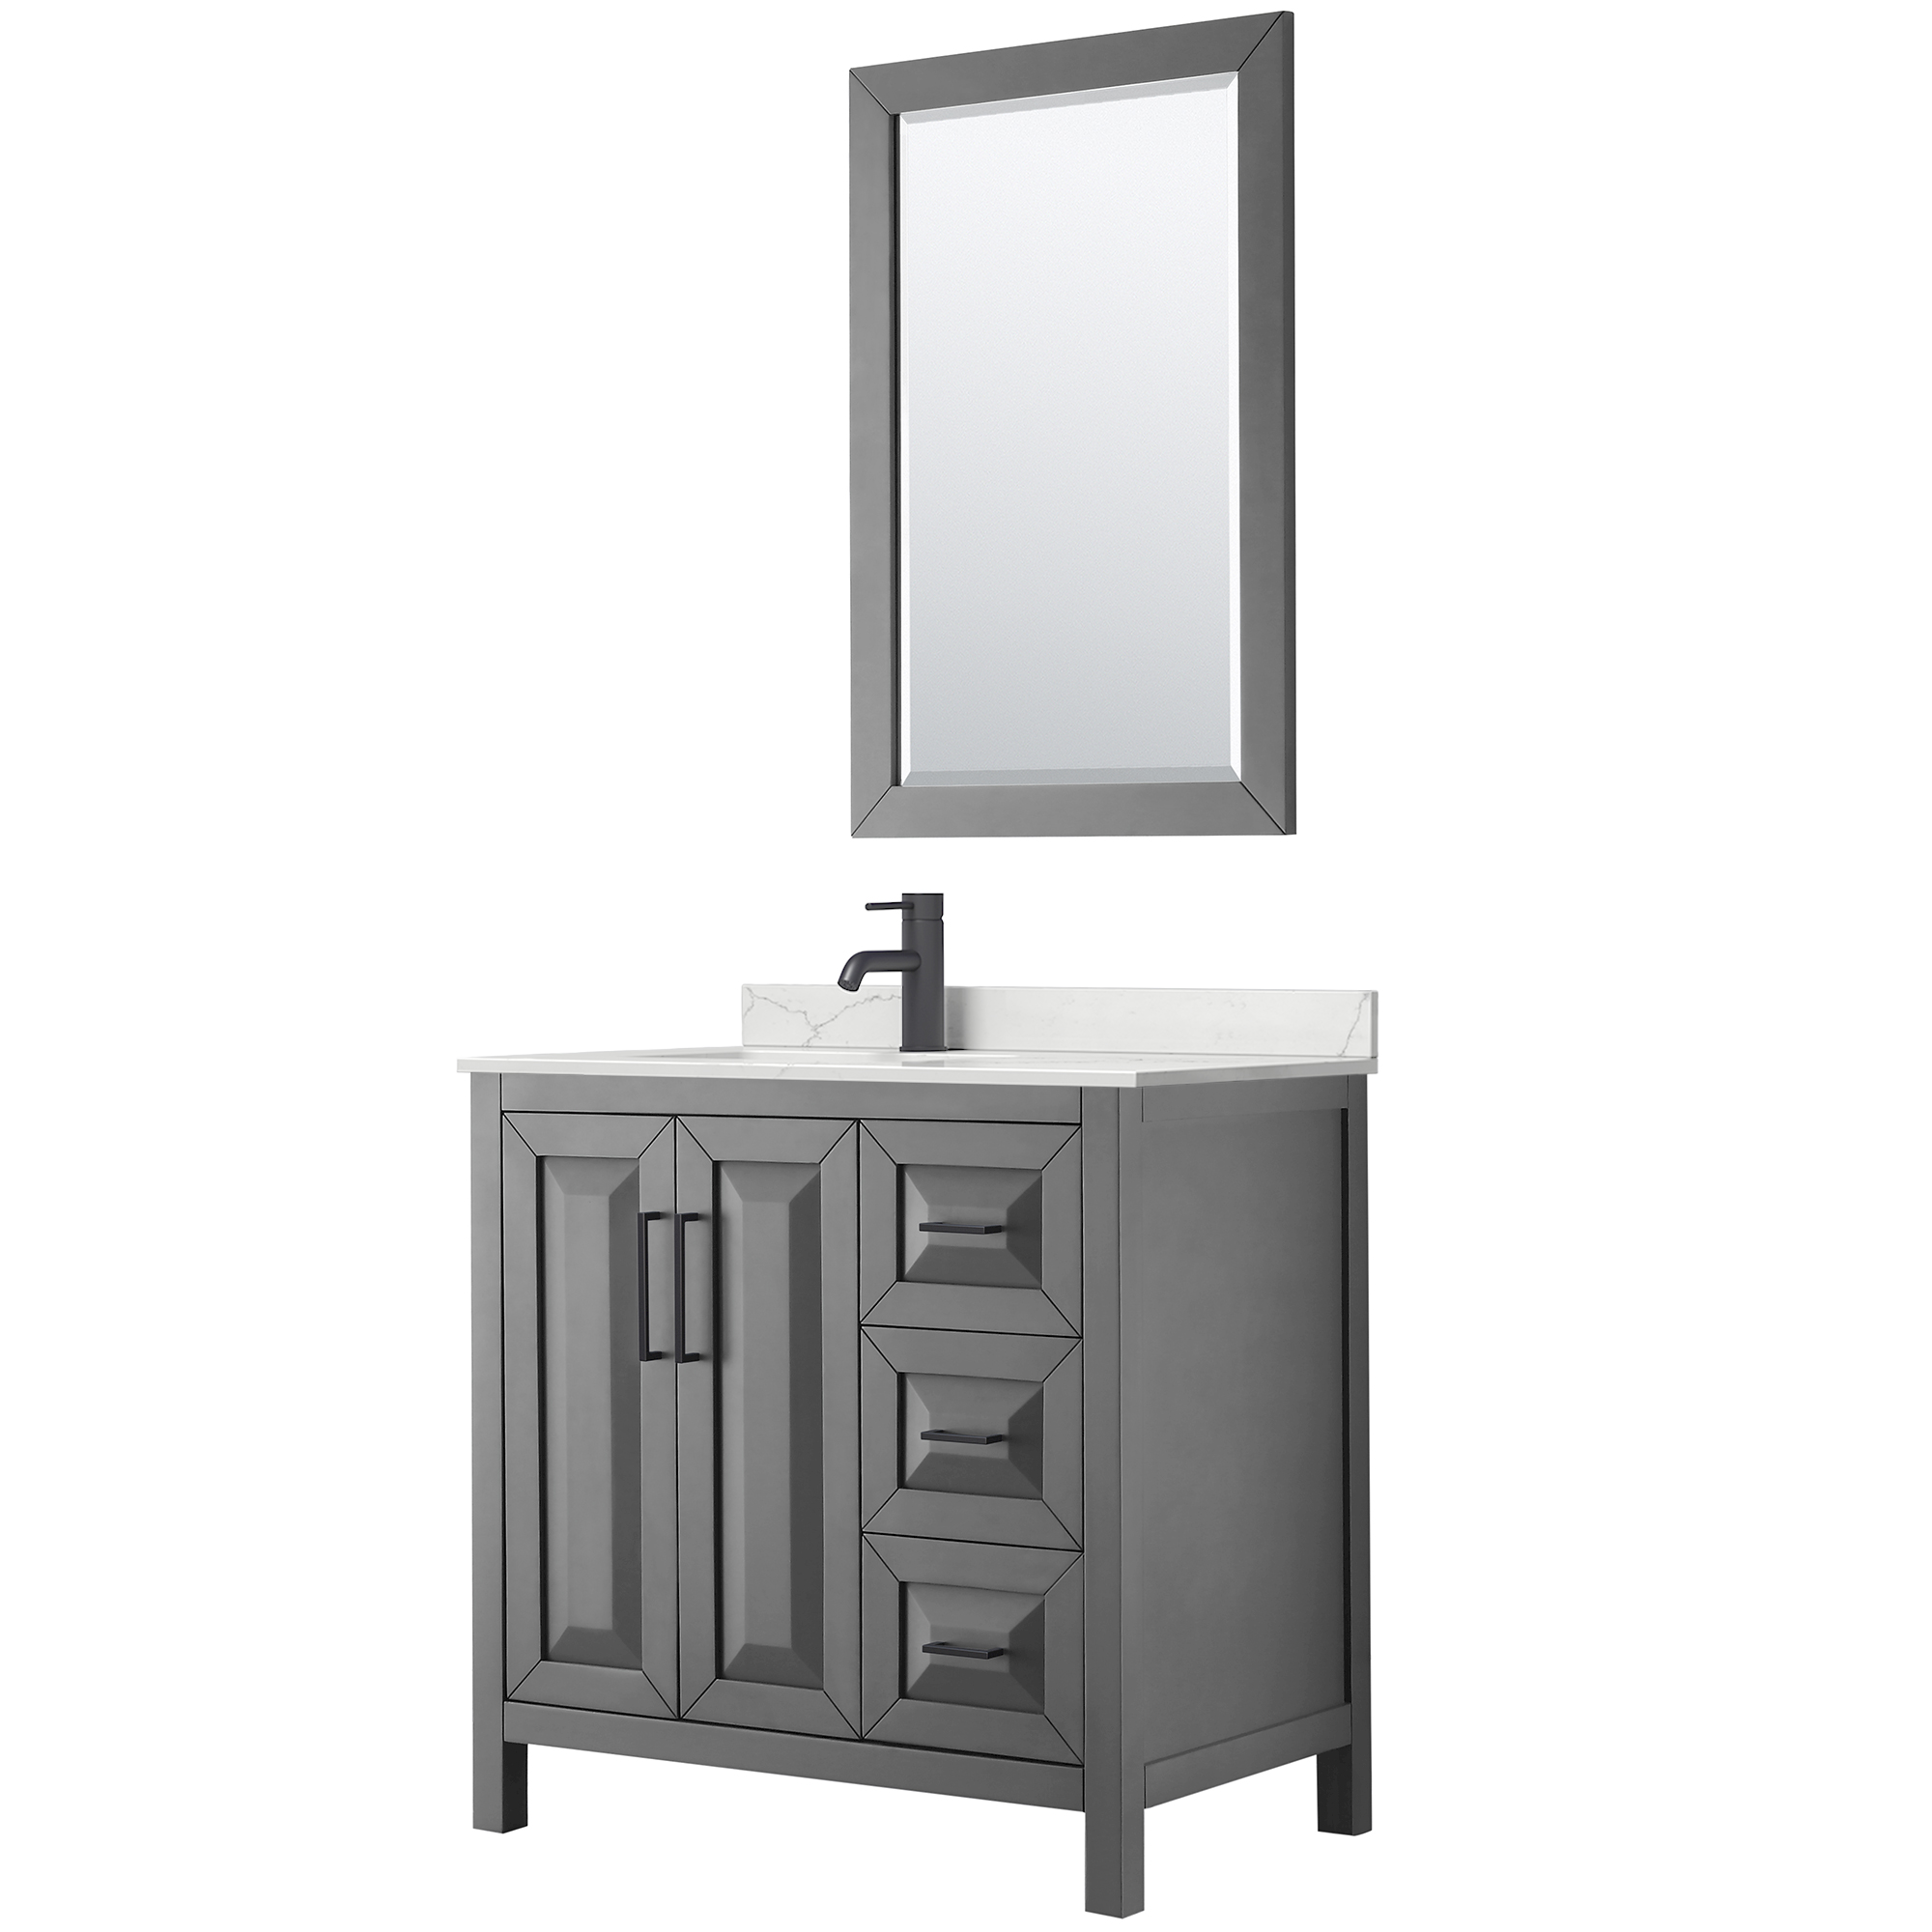 daria 36" single bathroom vanity by wyndham collection - dark gray